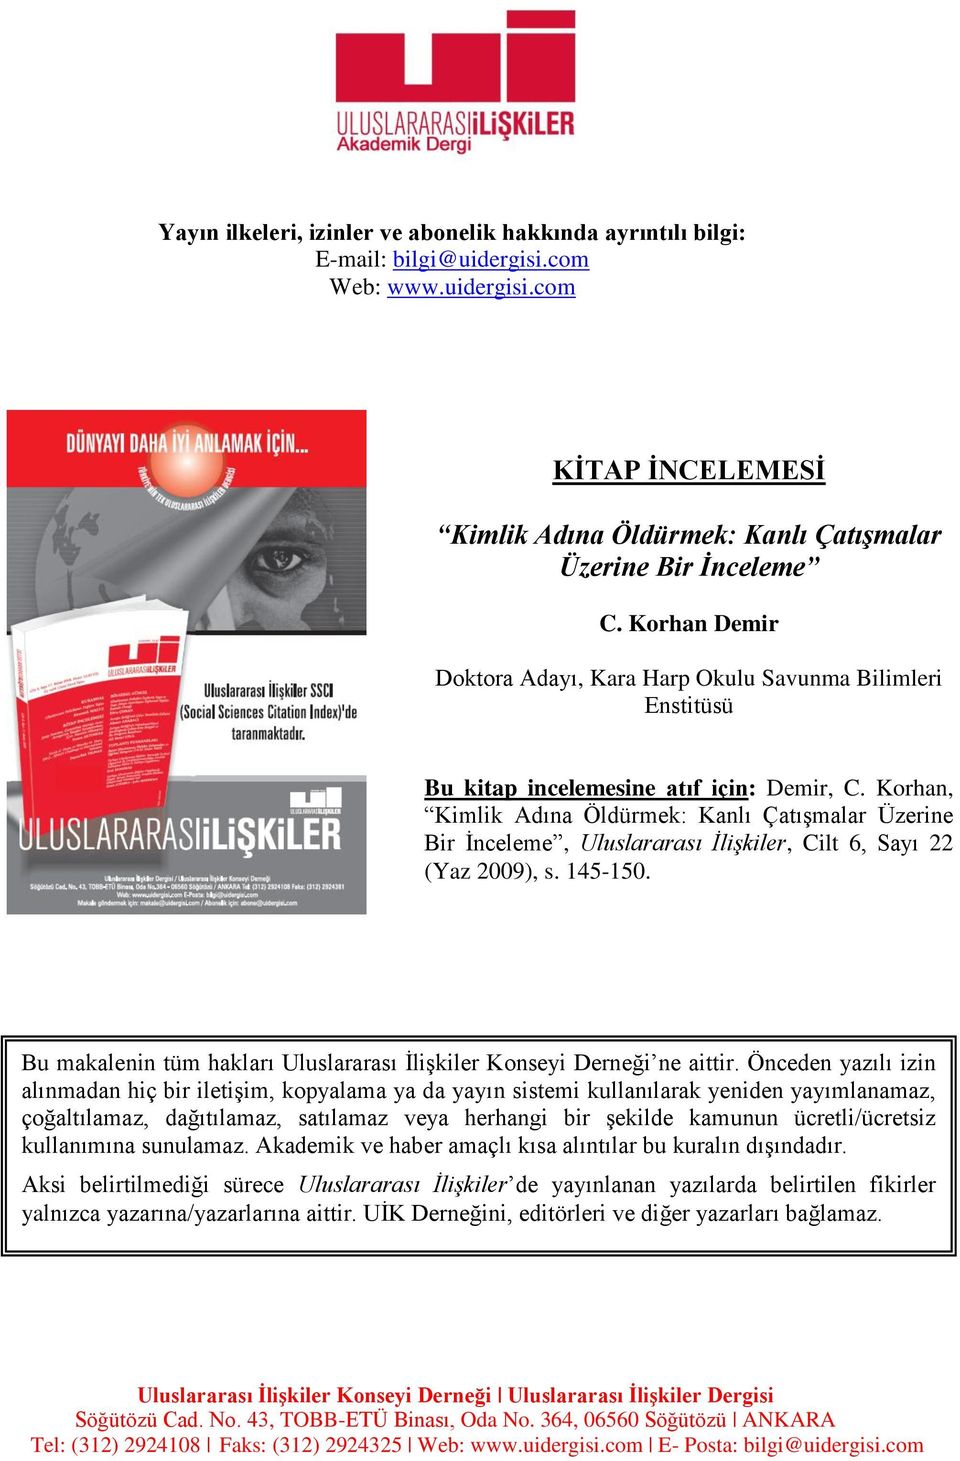 Korhan, Kimlik Adına Öldürmek: Kanlı Çatışmalar Üzerine Bir İnceleme, Uluslararası İlişkiler, Cilt 6, Sayı 22 (Yaz 2009), s. 145-150.